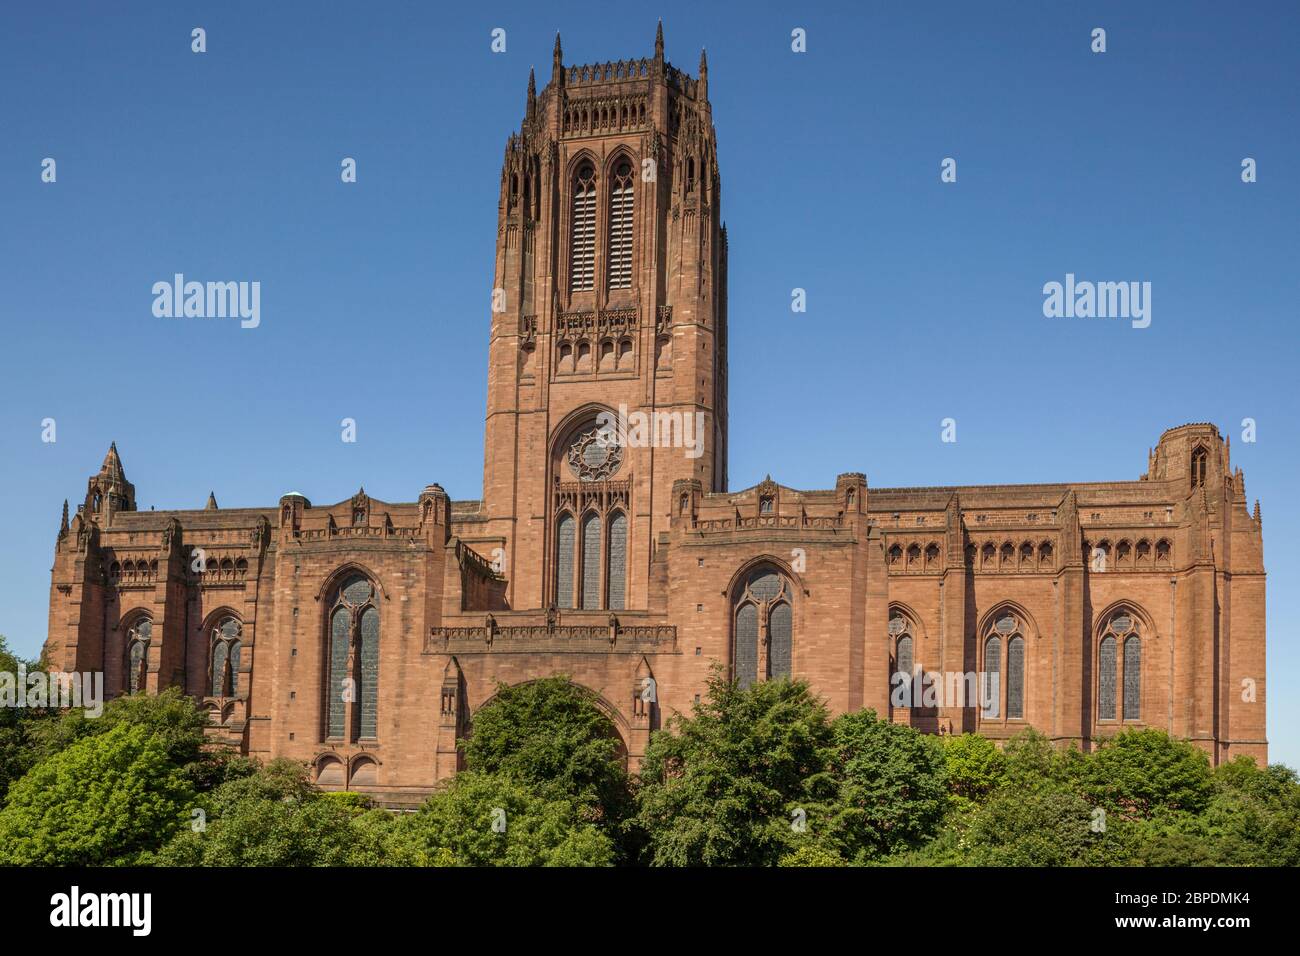 Côté est de la cathédrale anglicane de Liverpool, en Angleterre. Connue officiellement sous le nom de cathédrale de Liverpool, elle est la cinquième plus grande cathédrale du monde Banque D'Images